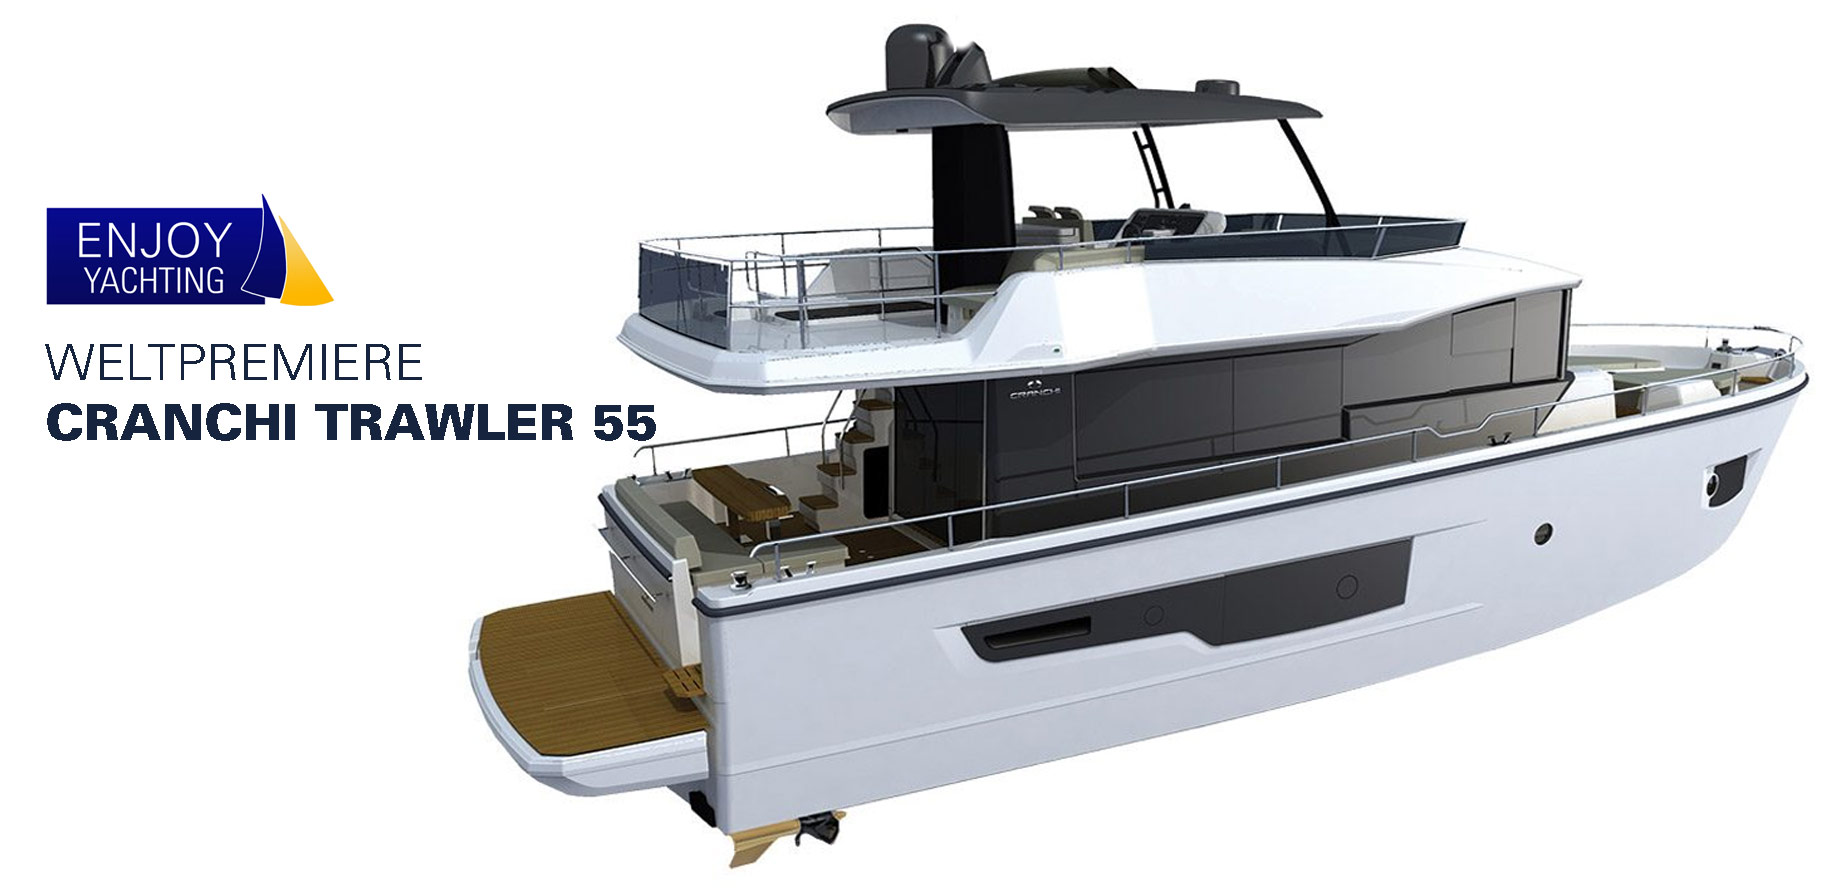 trawler-55-cranchi-enjoy-yachting